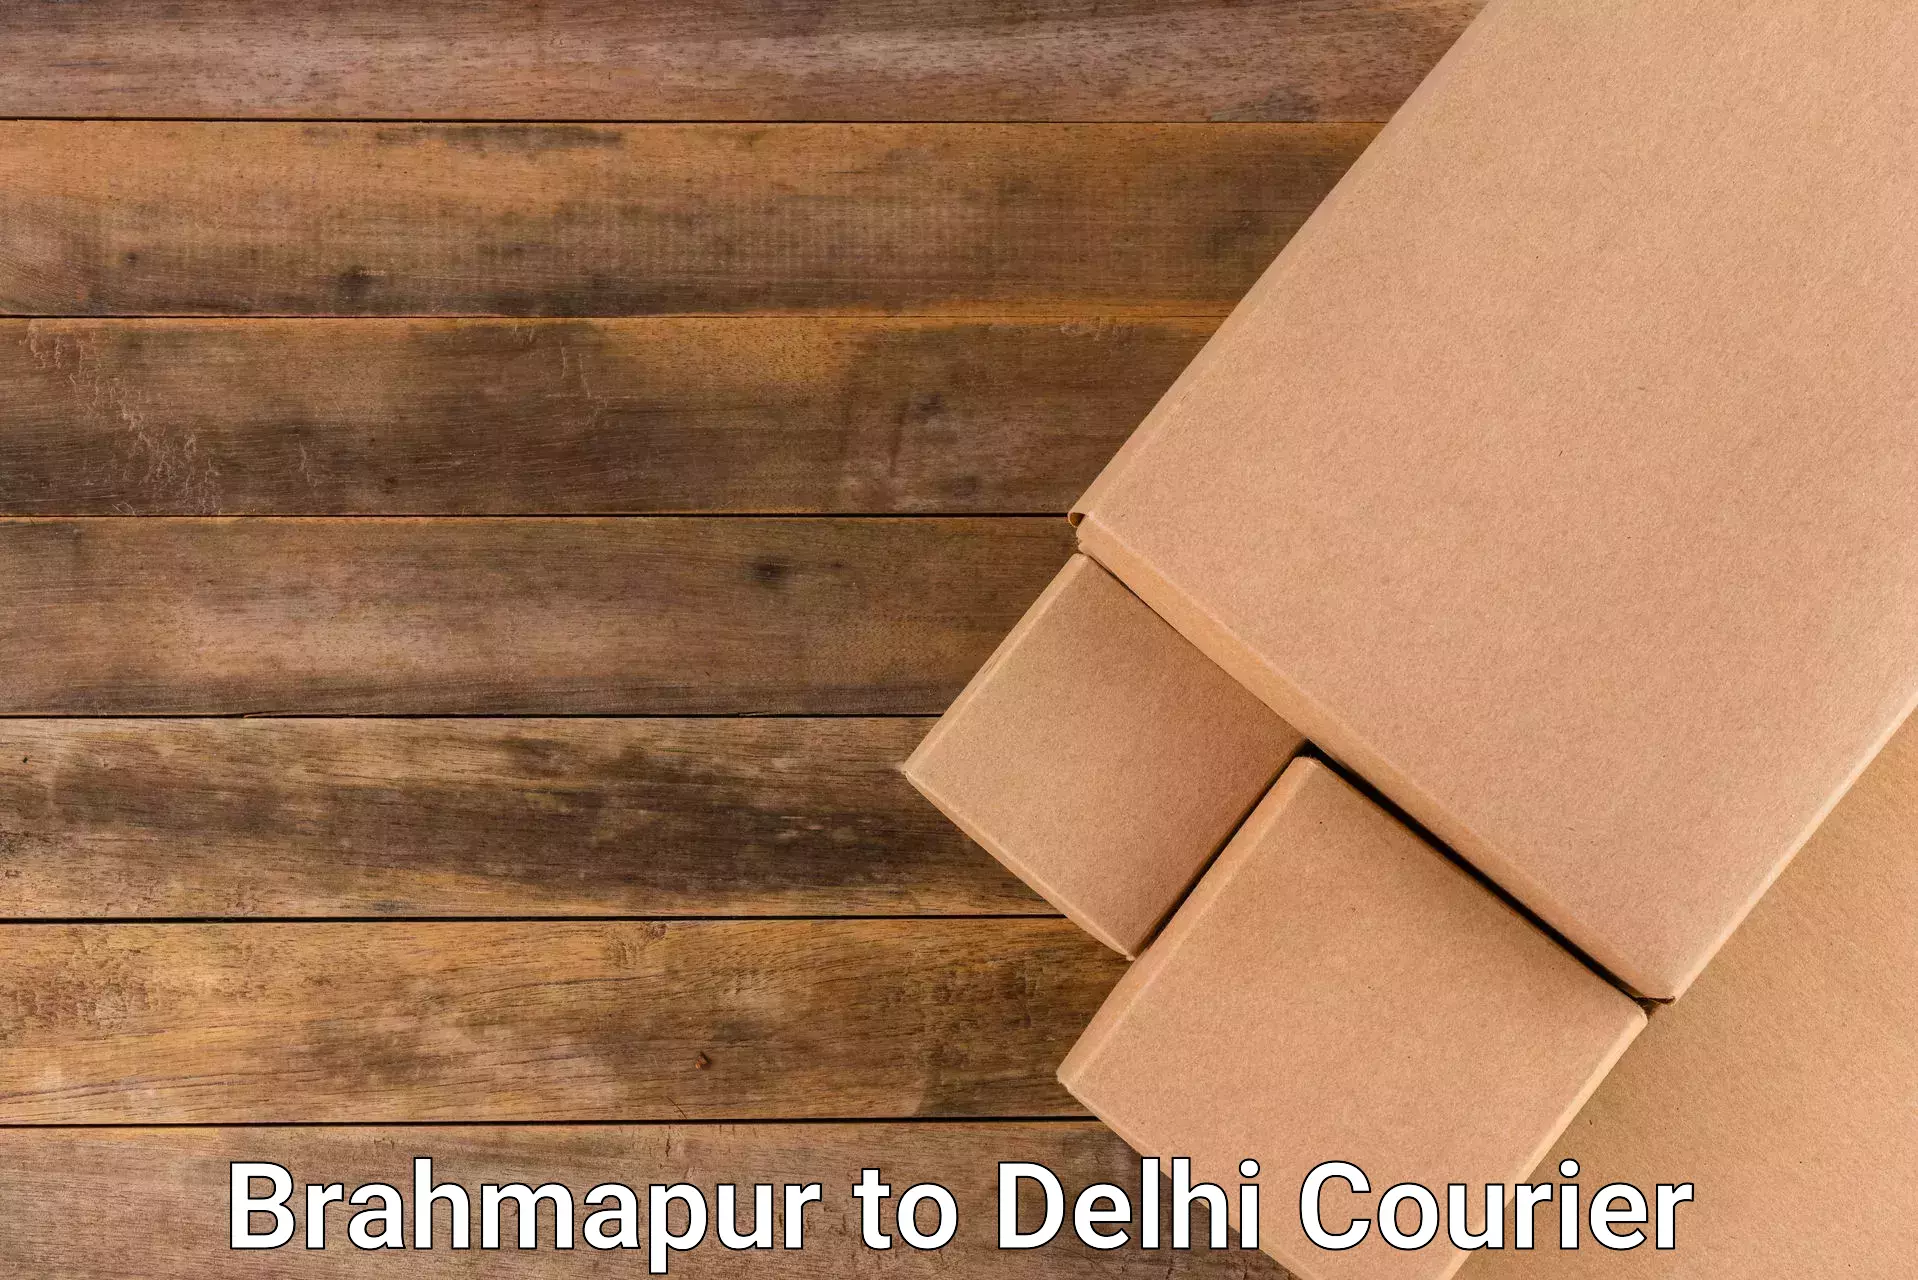 High-capacity parcel service Brahmapur to Ramesh Nagar